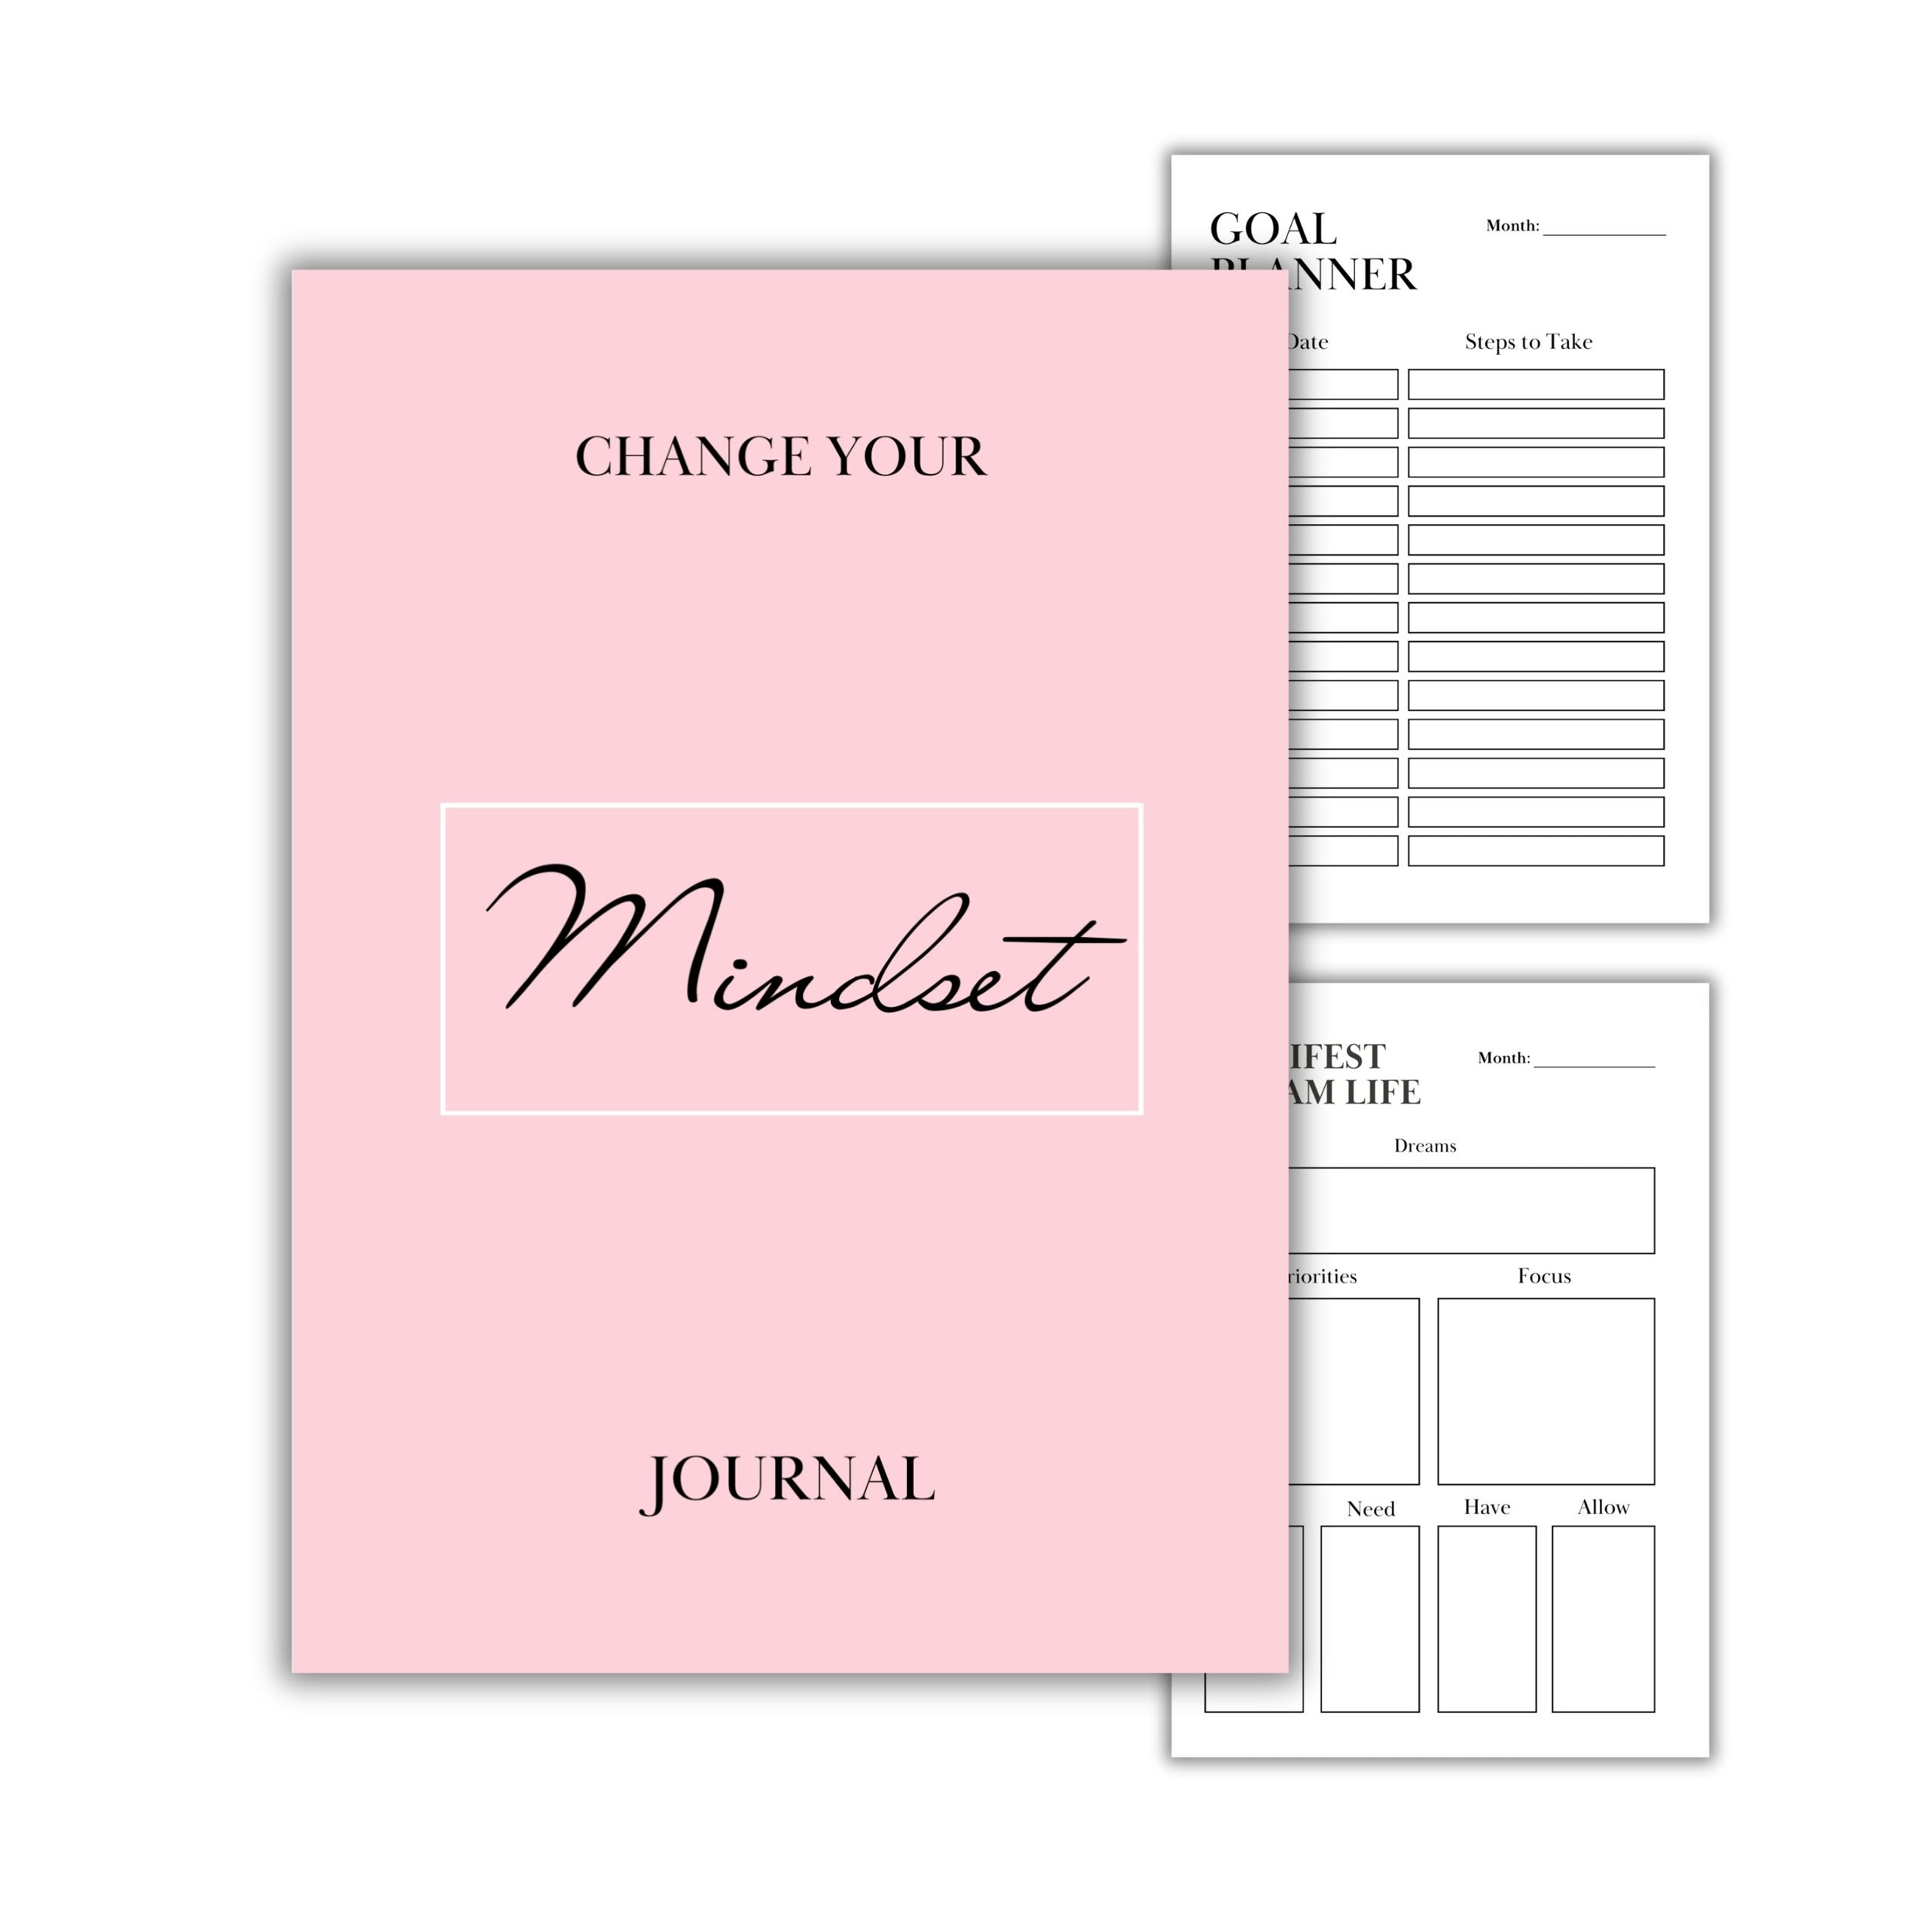 Positive Mindset and Outlook Journal Digital Download